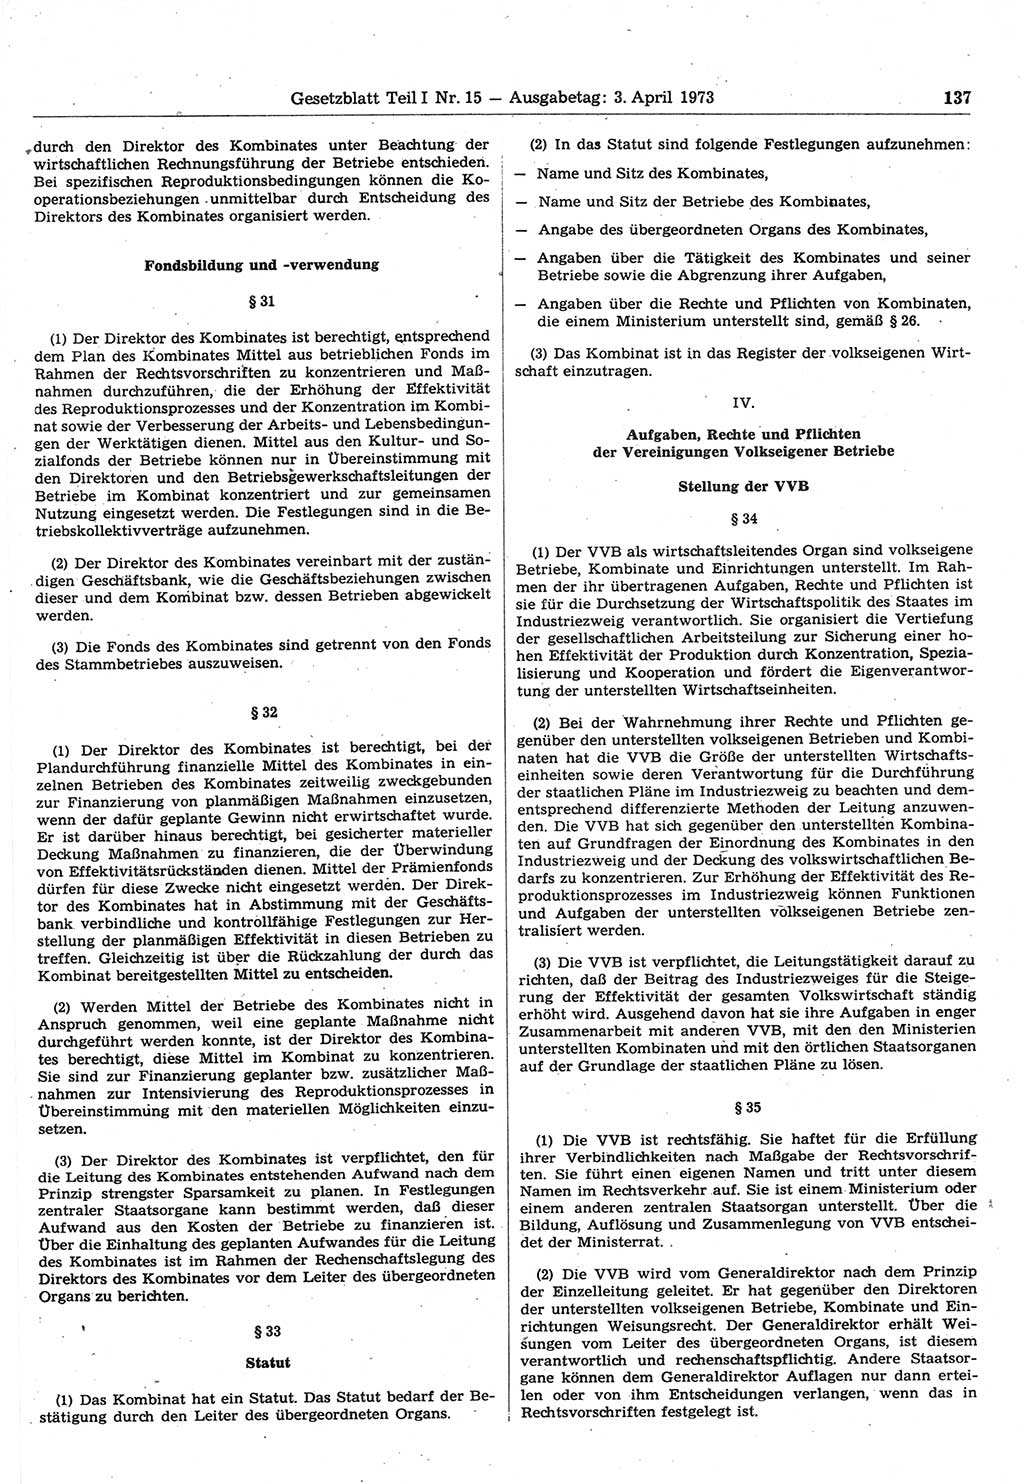 Gesetzblatt (GBl.) der Deutschen Demokratischen Republik (DDR) Teil Ⅰ 1973, Seite 137 (GBl. DDR Ⅰ 1973, S. 137)